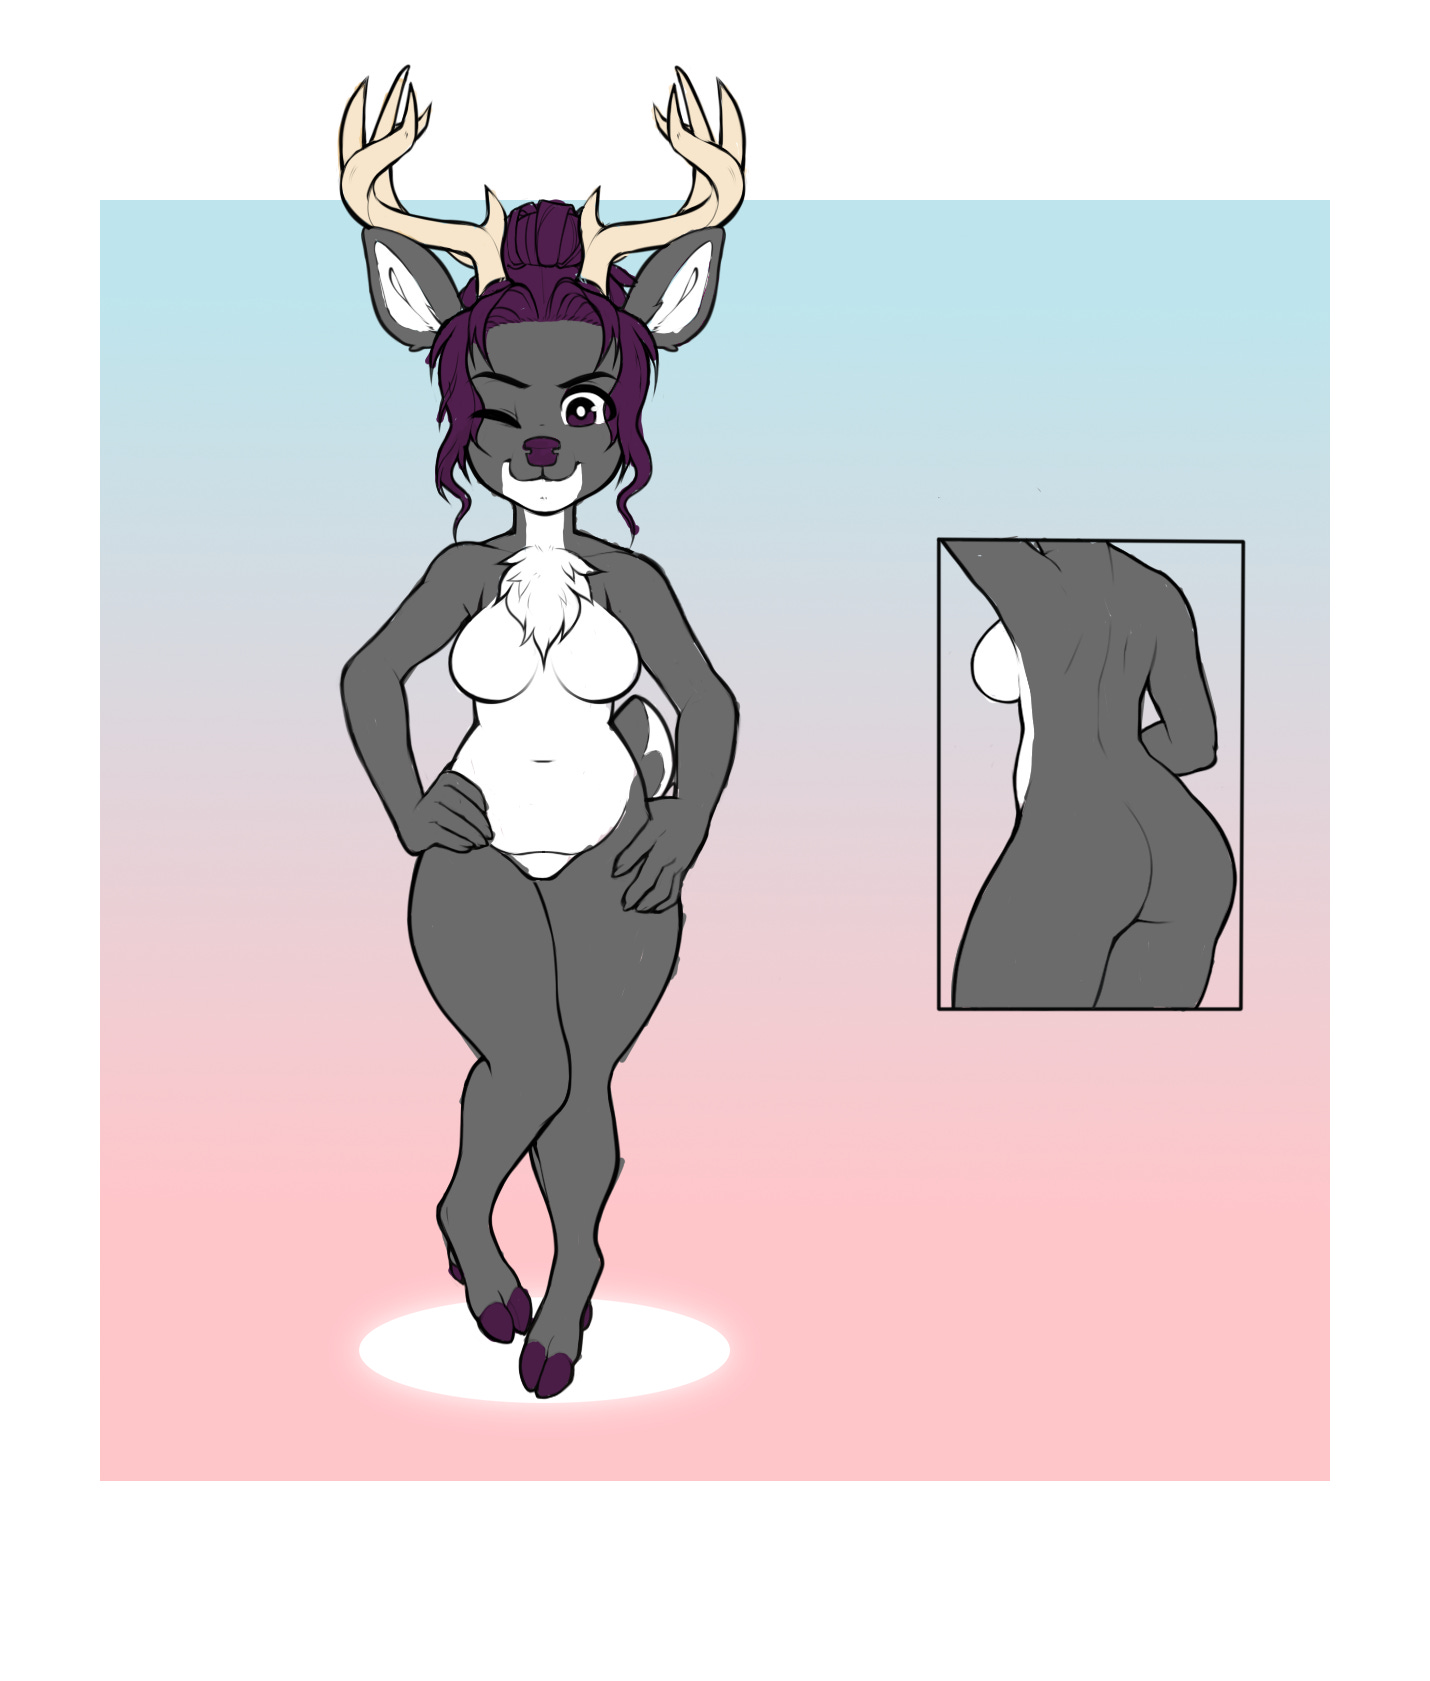 Grey femme deer with antlers and purple hair/eyes.